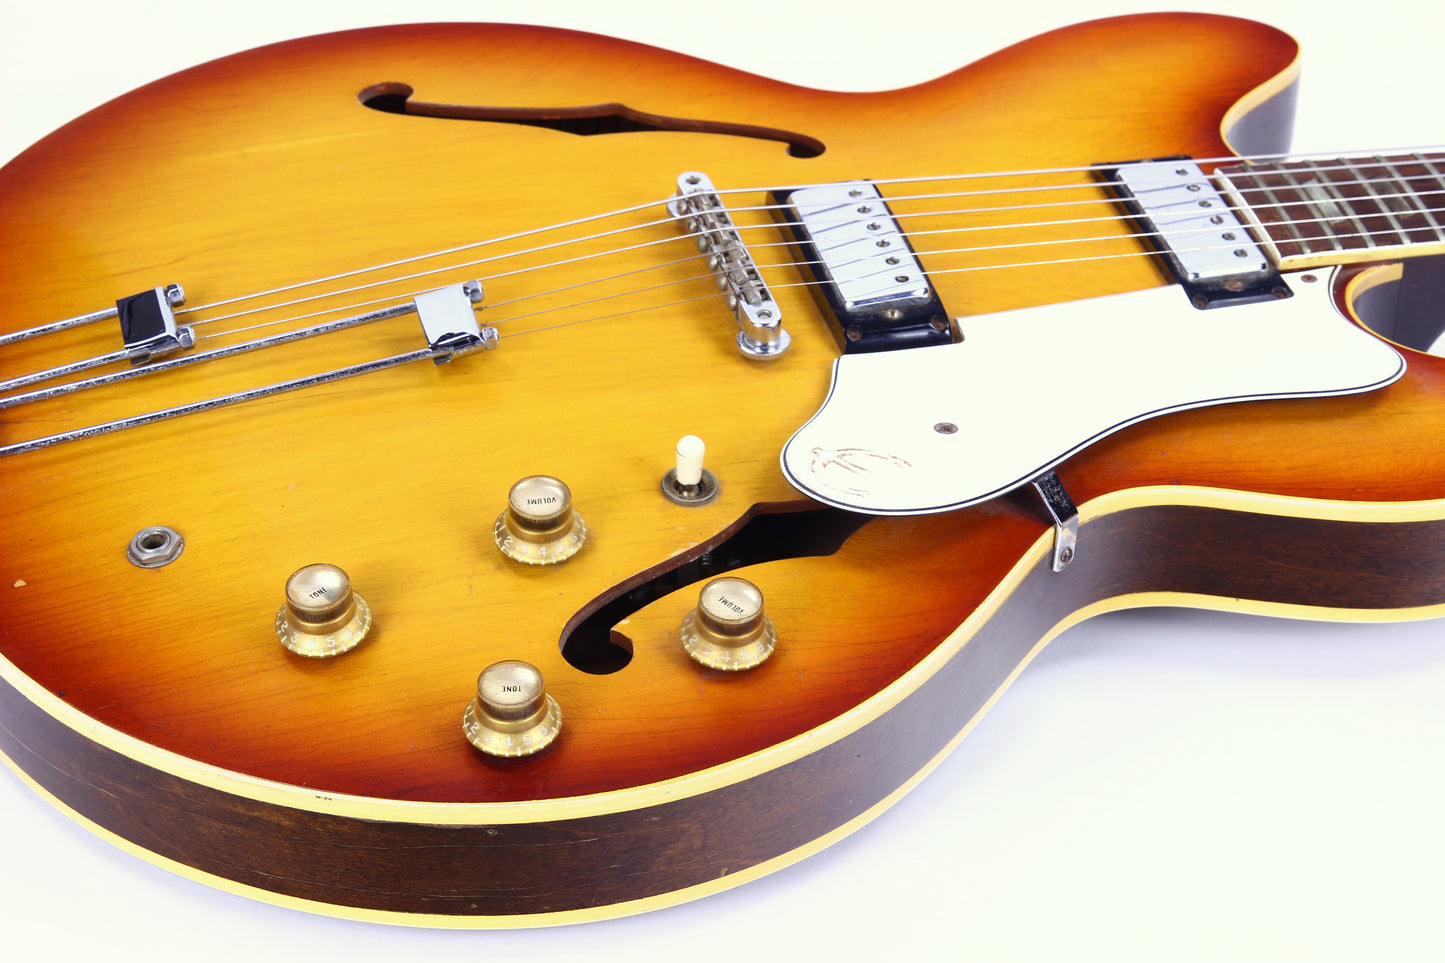 1966 Epiphone Riviera Cherry Sunburst - Gibson-USA Made Vintage Guitar! es-335, es-345, es-355